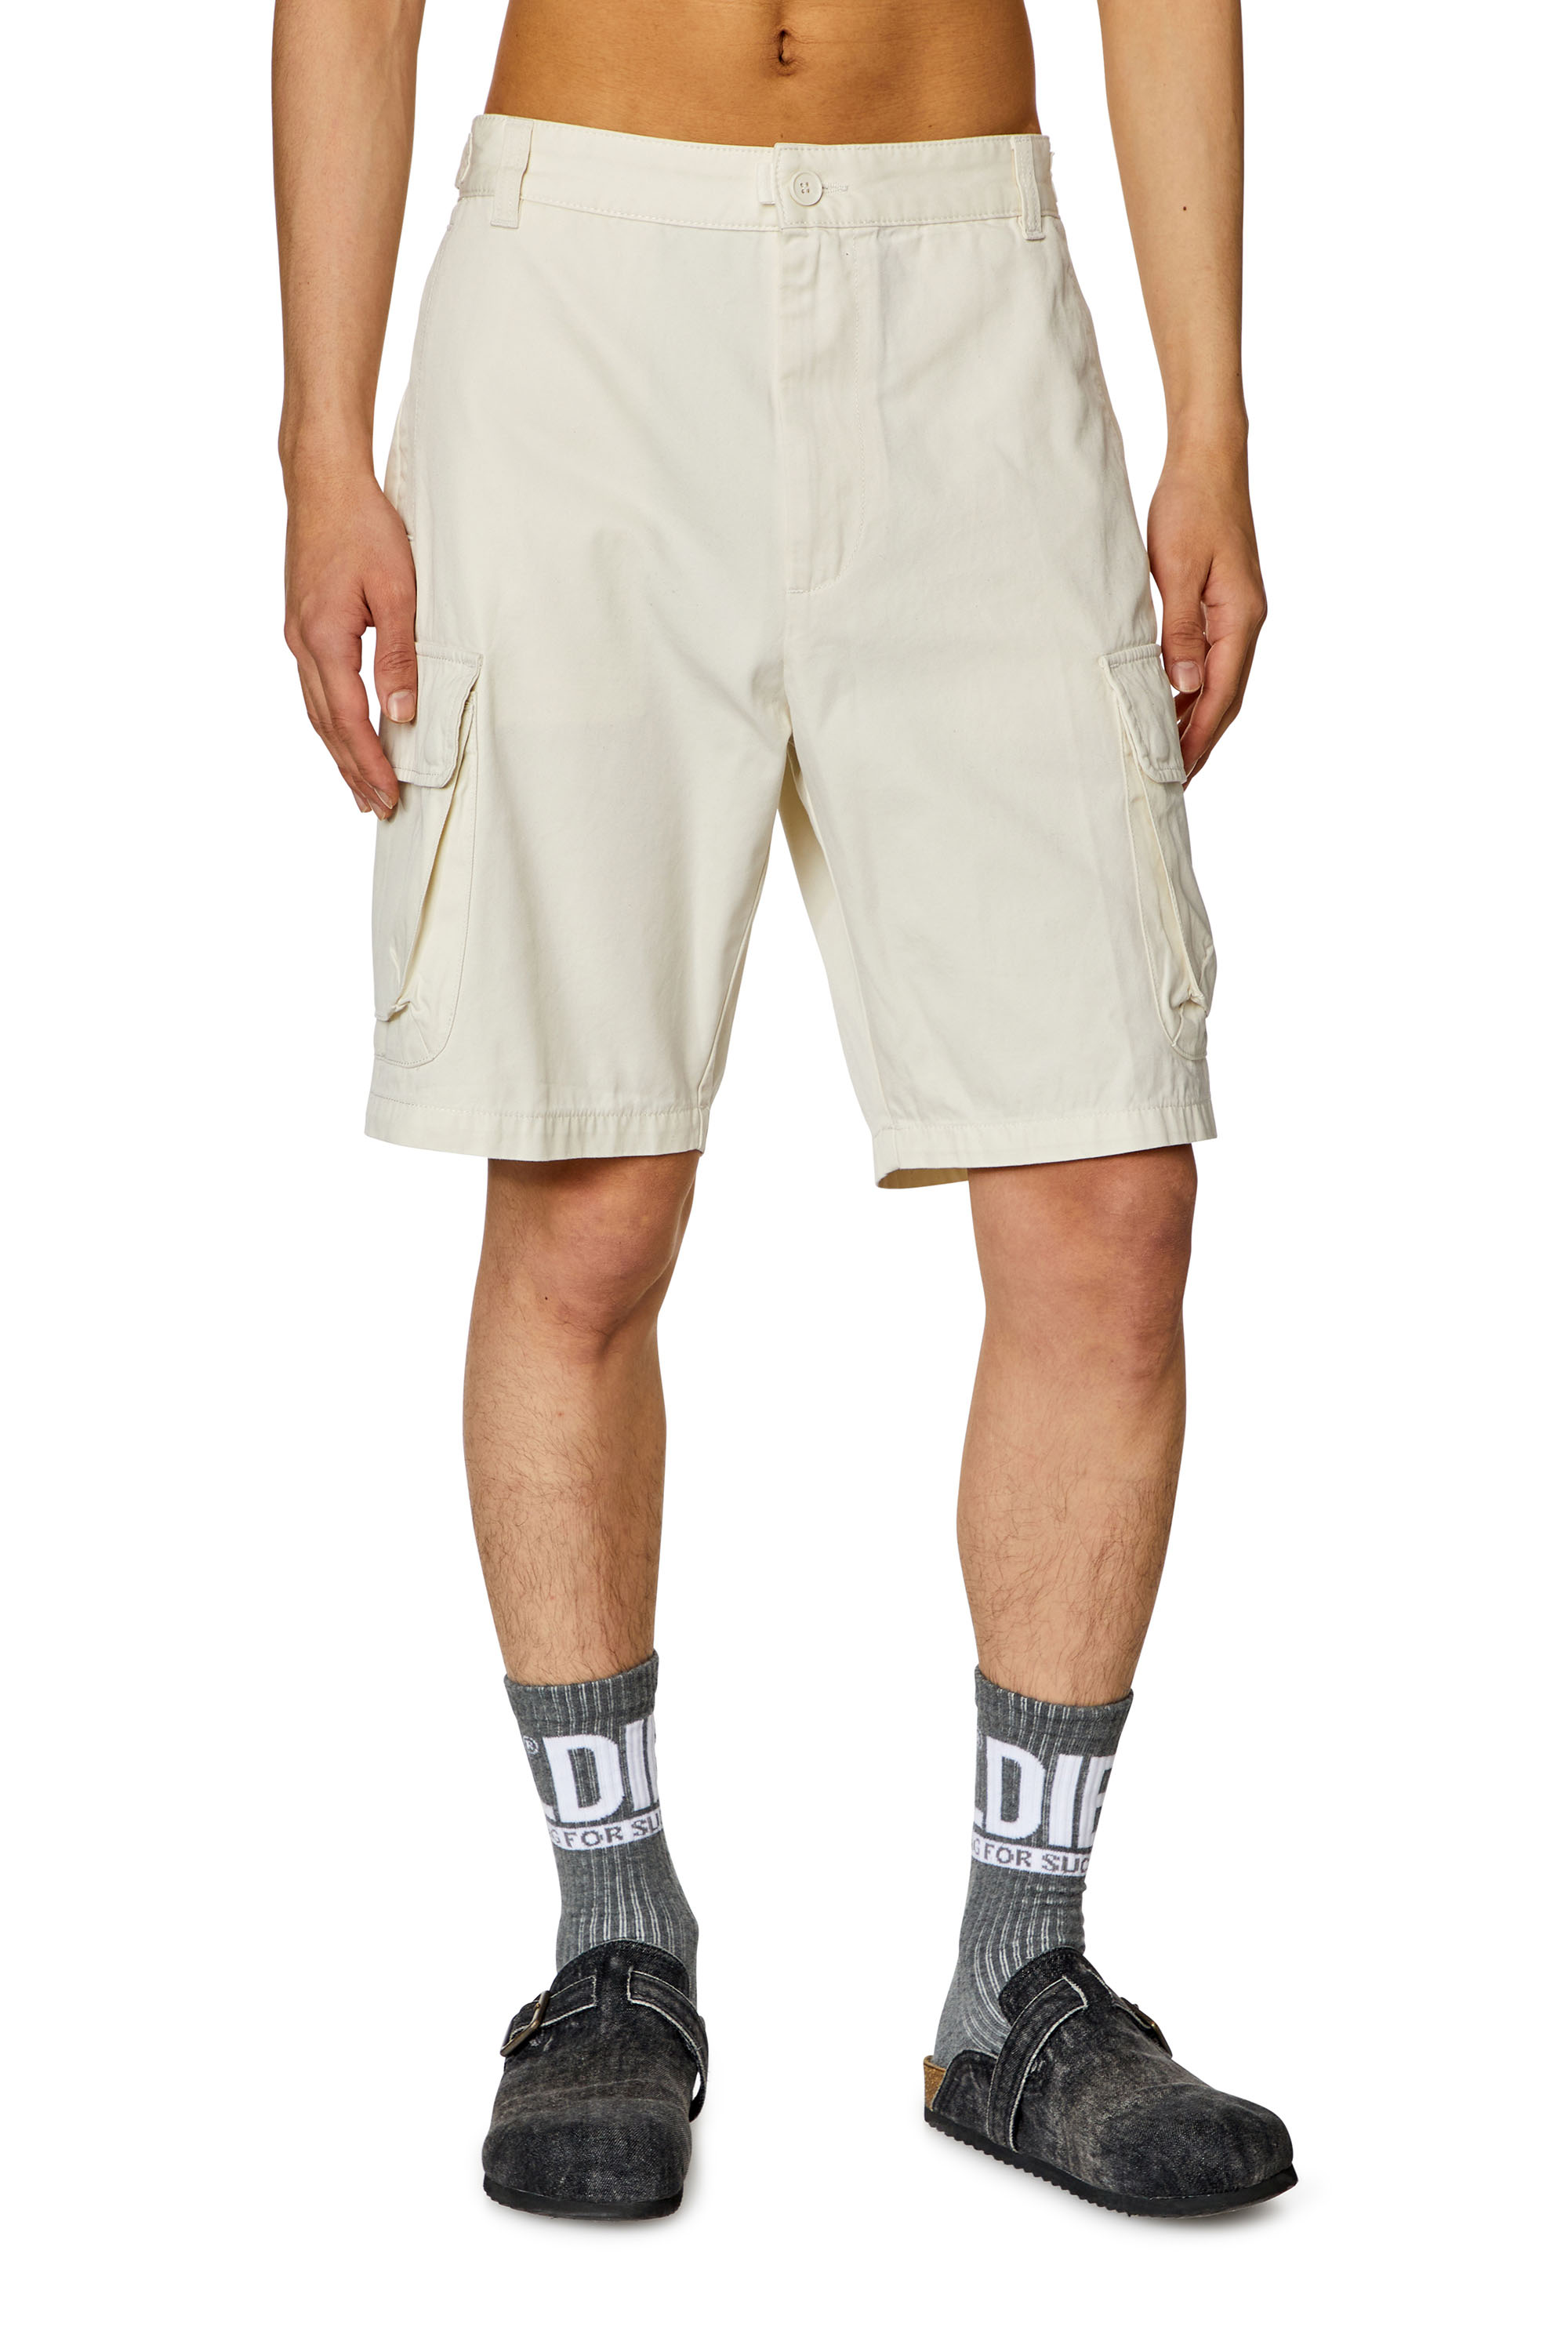 Diesel - Pantalones cortos de sarga de algodón orgánico - Shorts - Hombre - Blanco